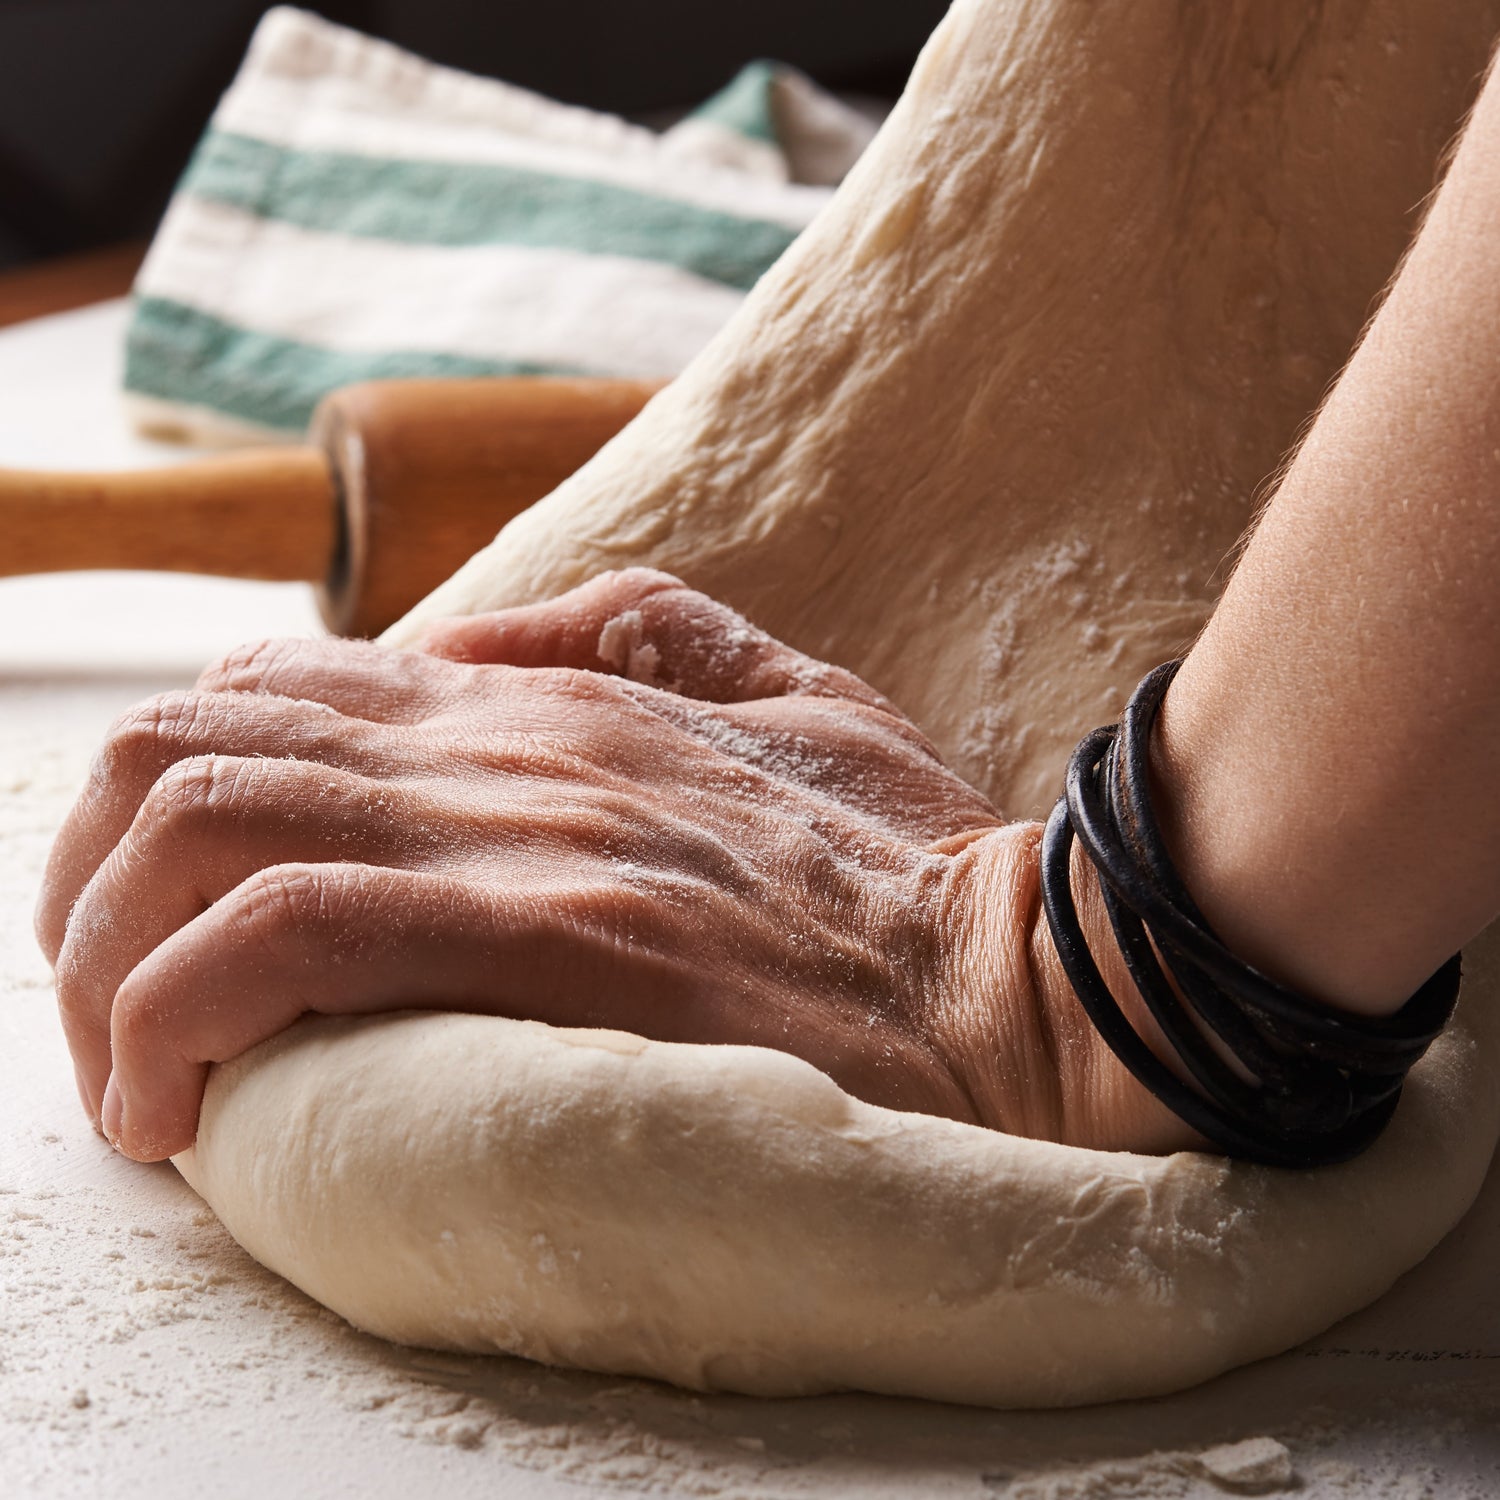 Tips for Baking Homemade Bread